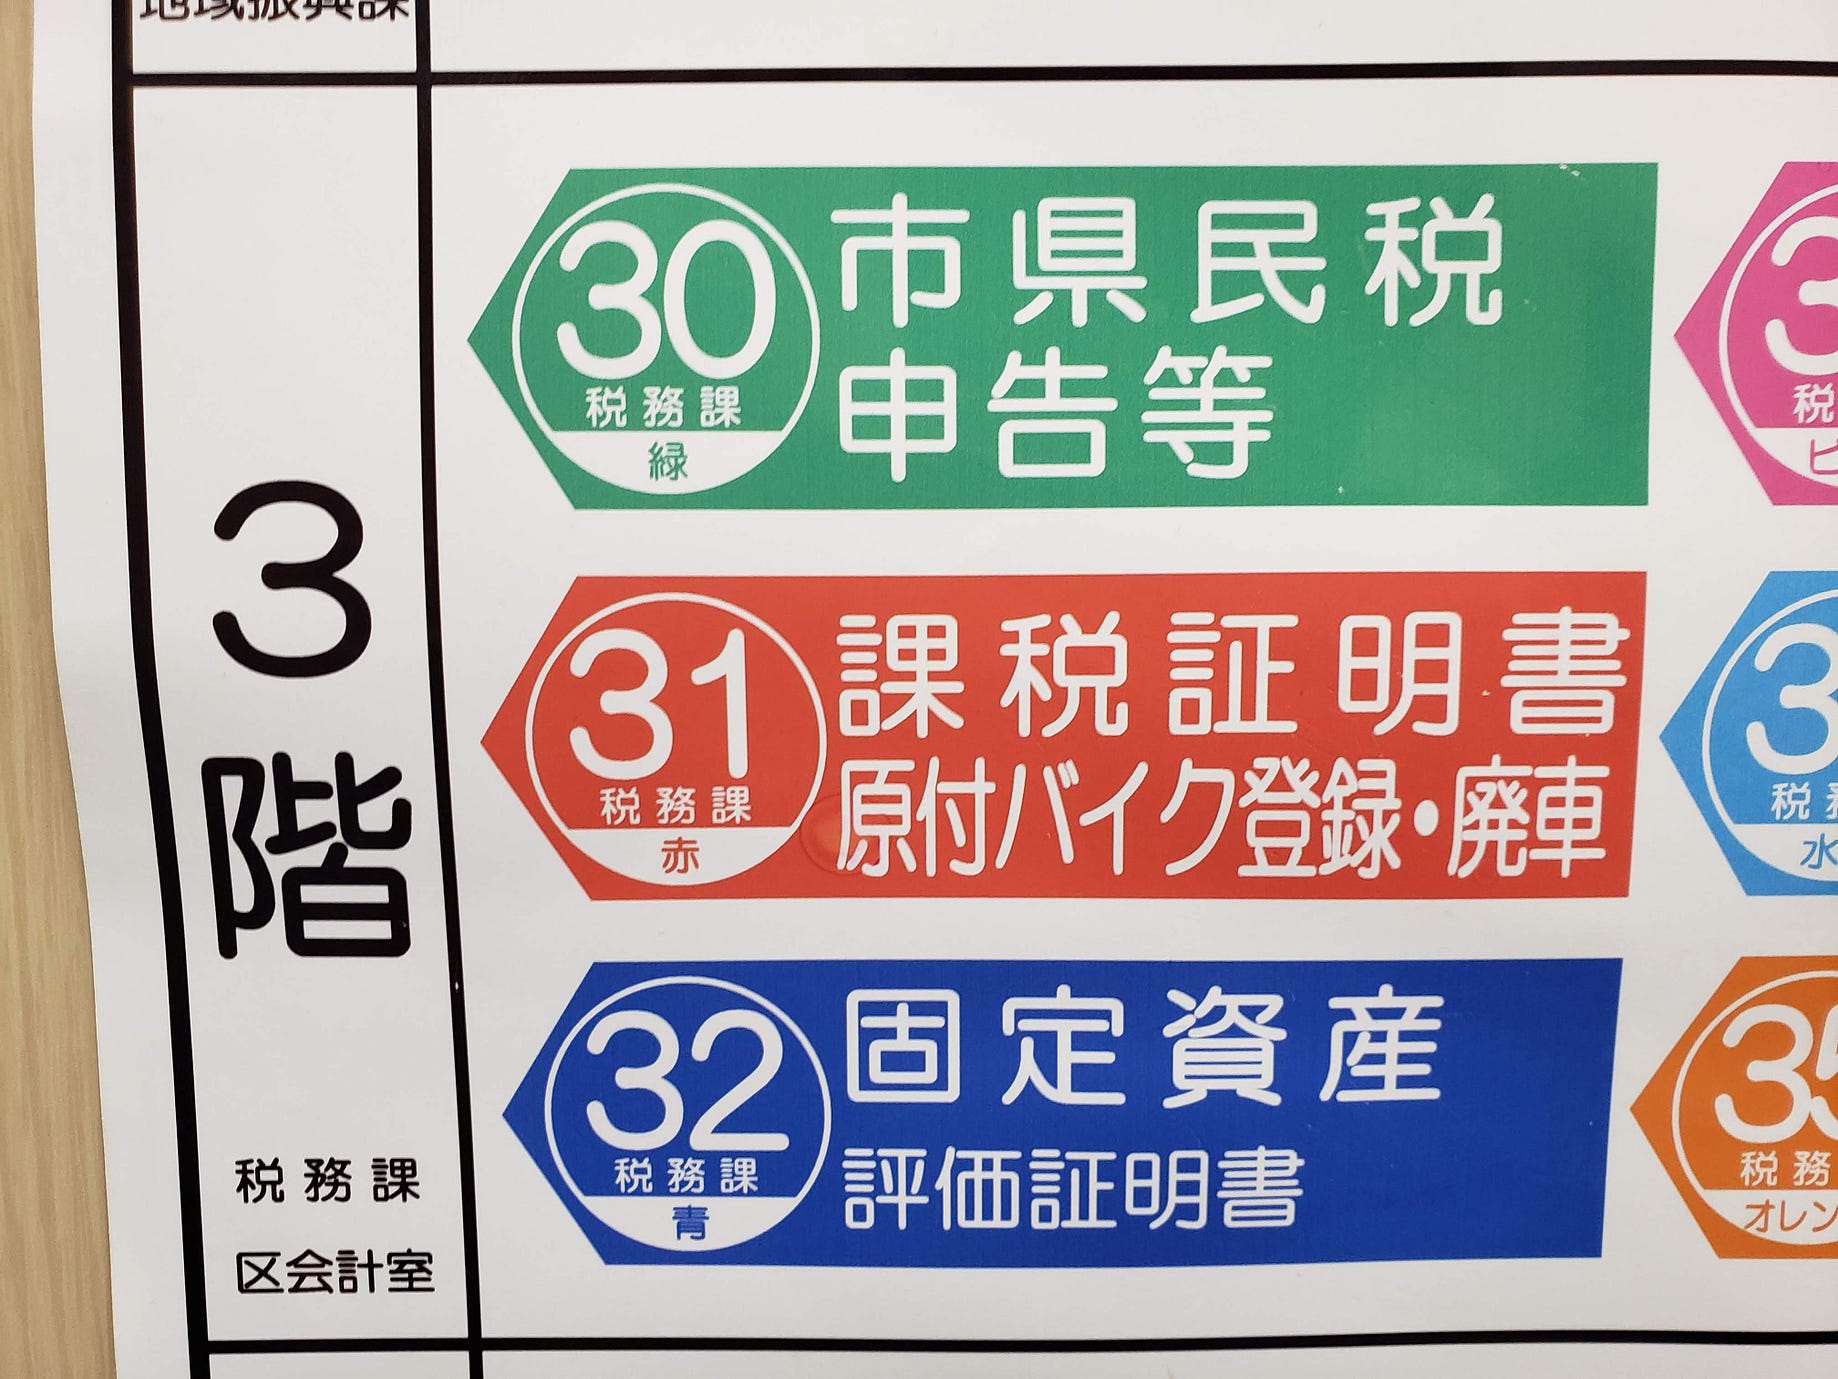 電動キックボードのナンバープレートを取得して公道に出る方法 11月4日まで開催されていた東京モーターショー 19 Open By Yusuke Naka Medium